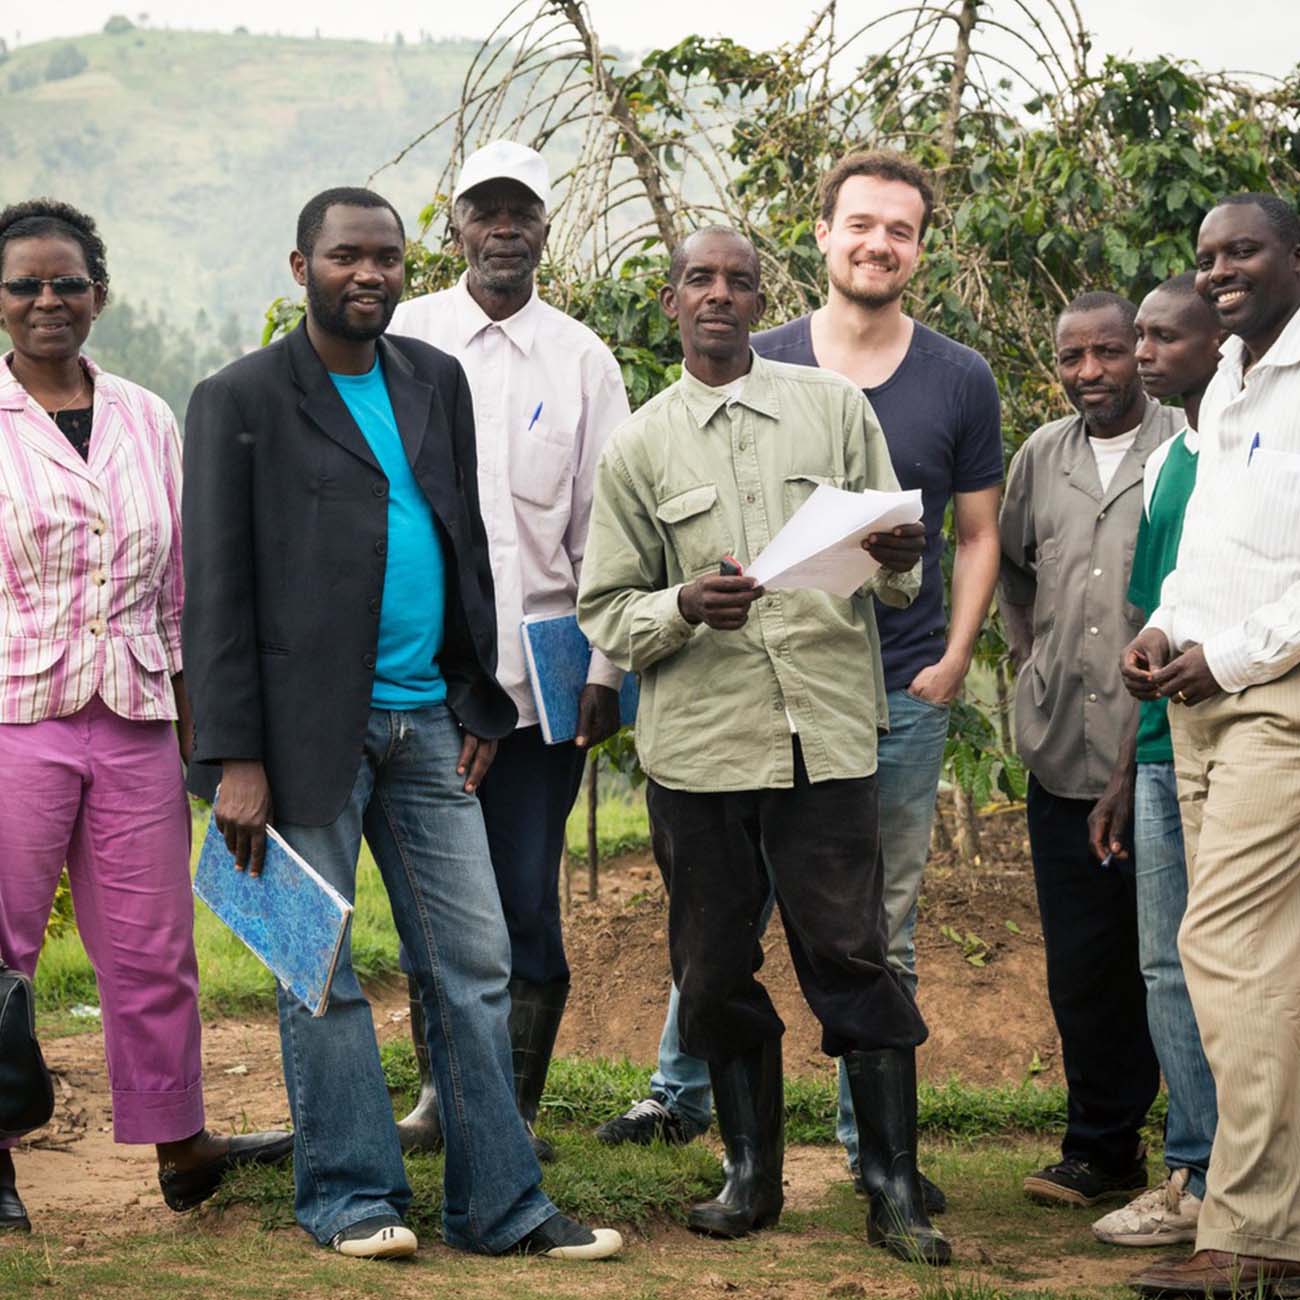 Rwanda Rushashi Wet Mill koffie